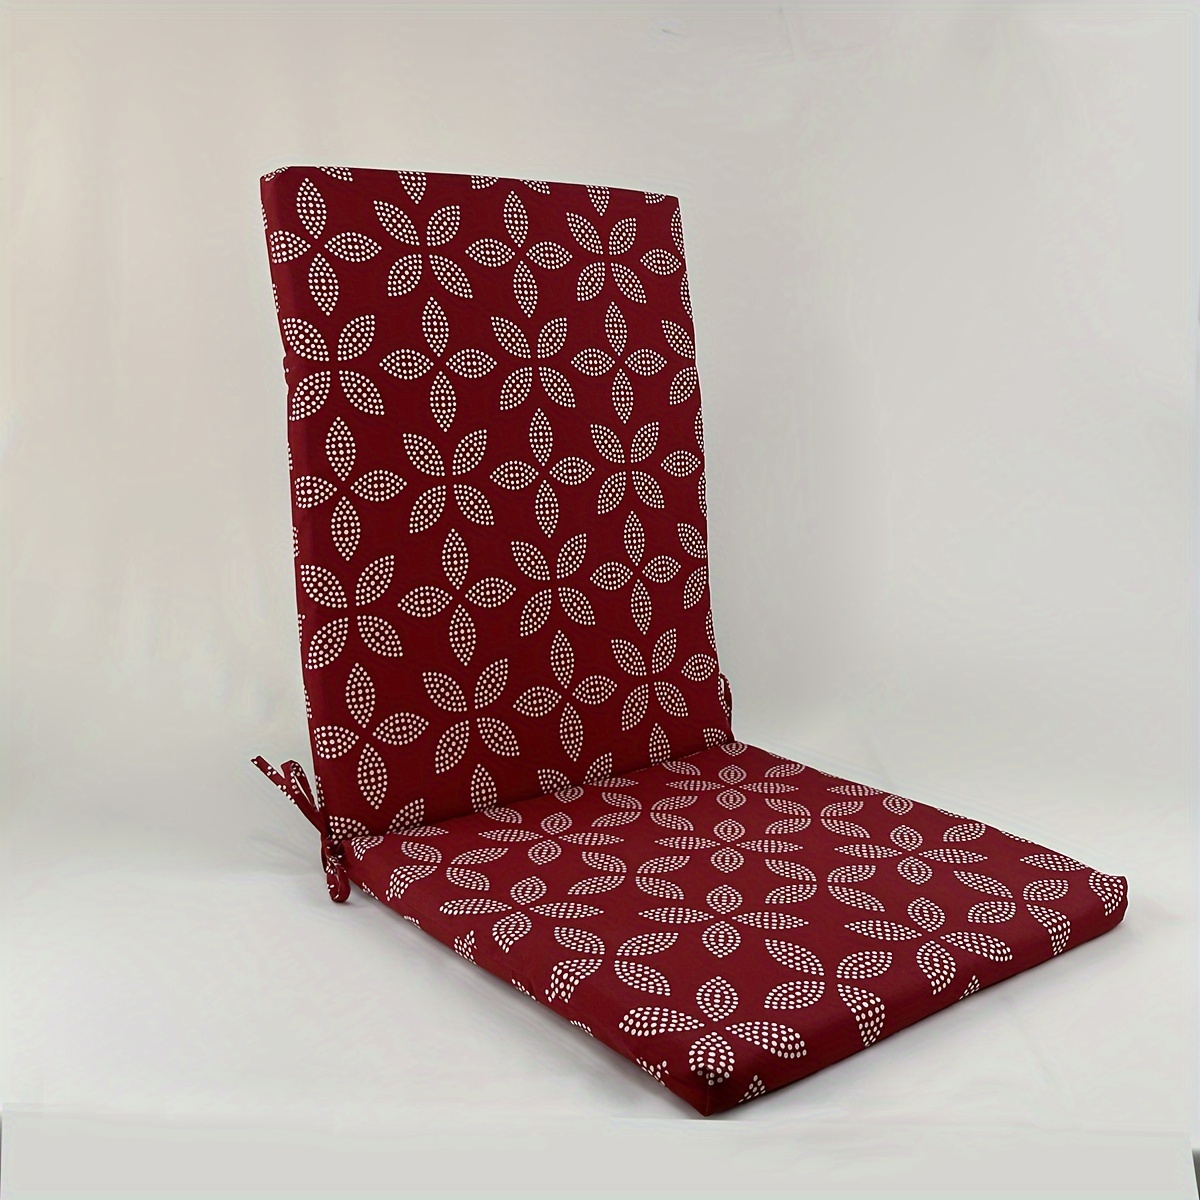 Outdoor Rocking Chair Cushions - Curved Edge Chair Cushion